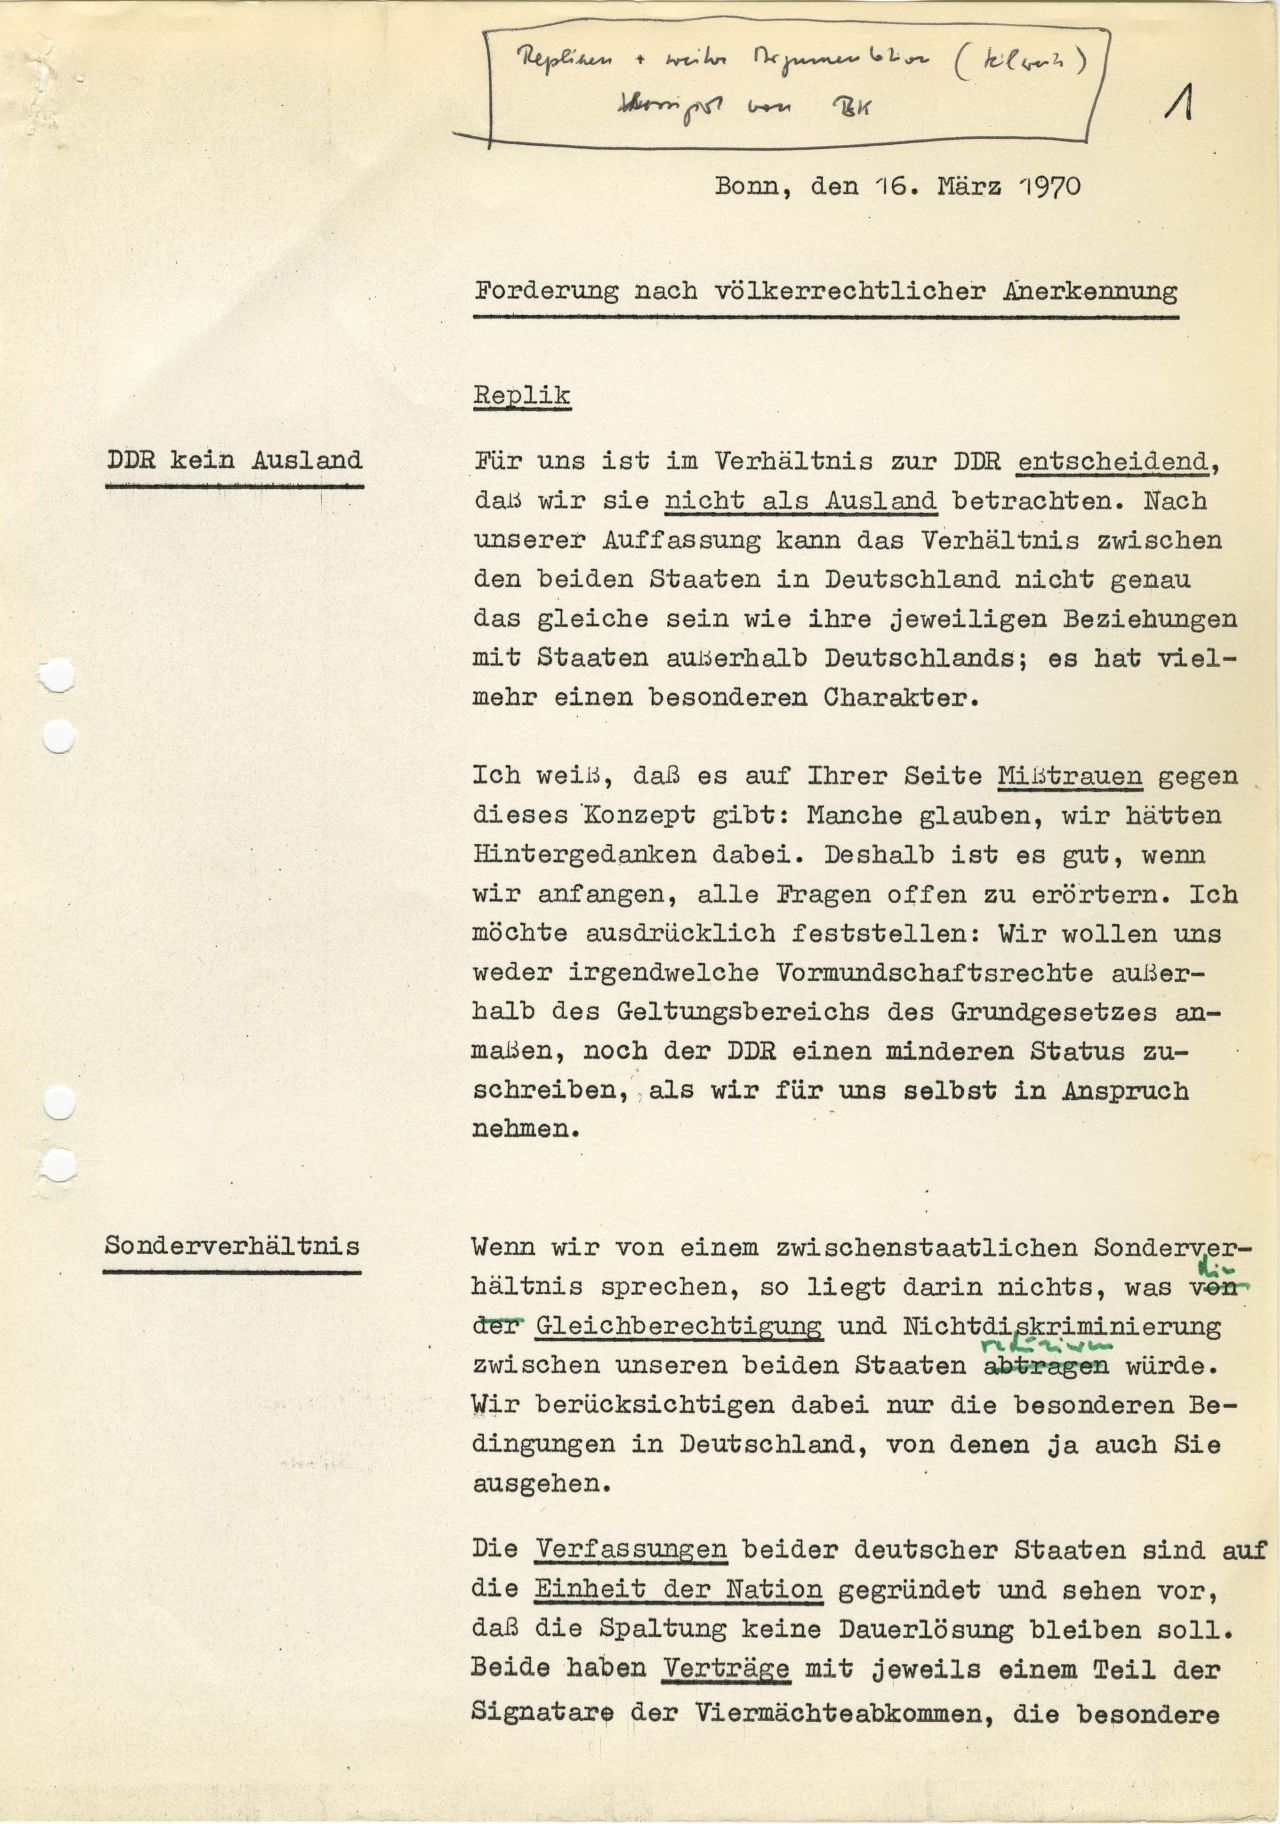 Dokument des Bundeskanzleramts, das für Bundeskanzler Willy Brandt Argumente für das deutsche-deutsche Gipfelgespräch mit dem Ministerratsvorsitzenden der Deutschen Demokratischen Republik (DDR), Willi Stoph, am 19. März 1970 in Erfurt zusammenfasst. Gegenstand sind die deutsch-deutschen Beziehungen.
